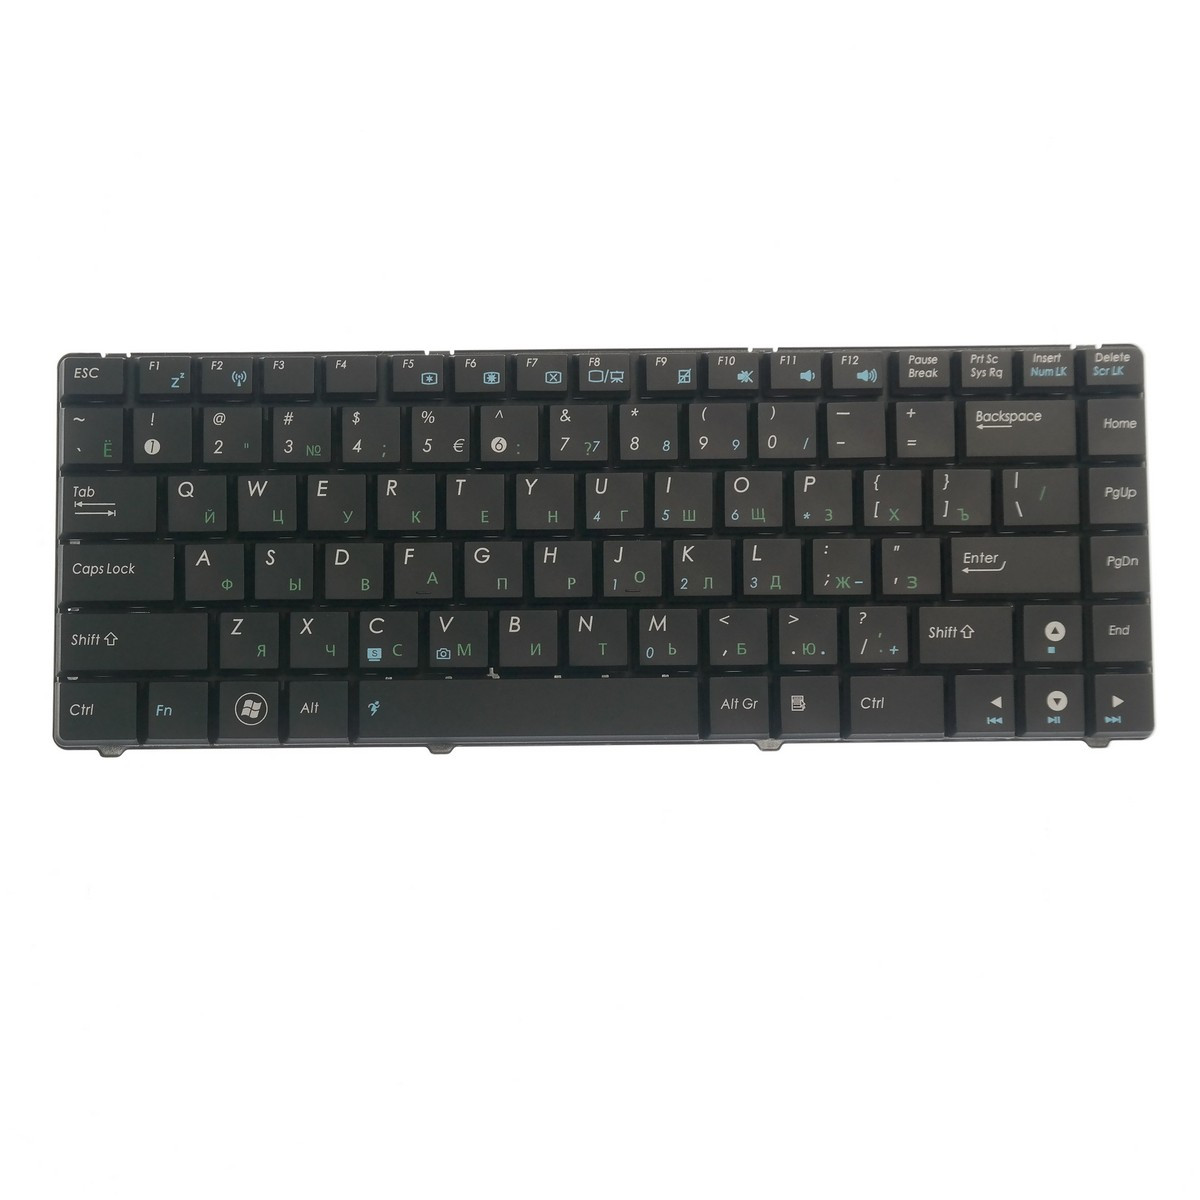 Клавиатура для ноутбука Asus A45N A45V A45VD A45VJ черная